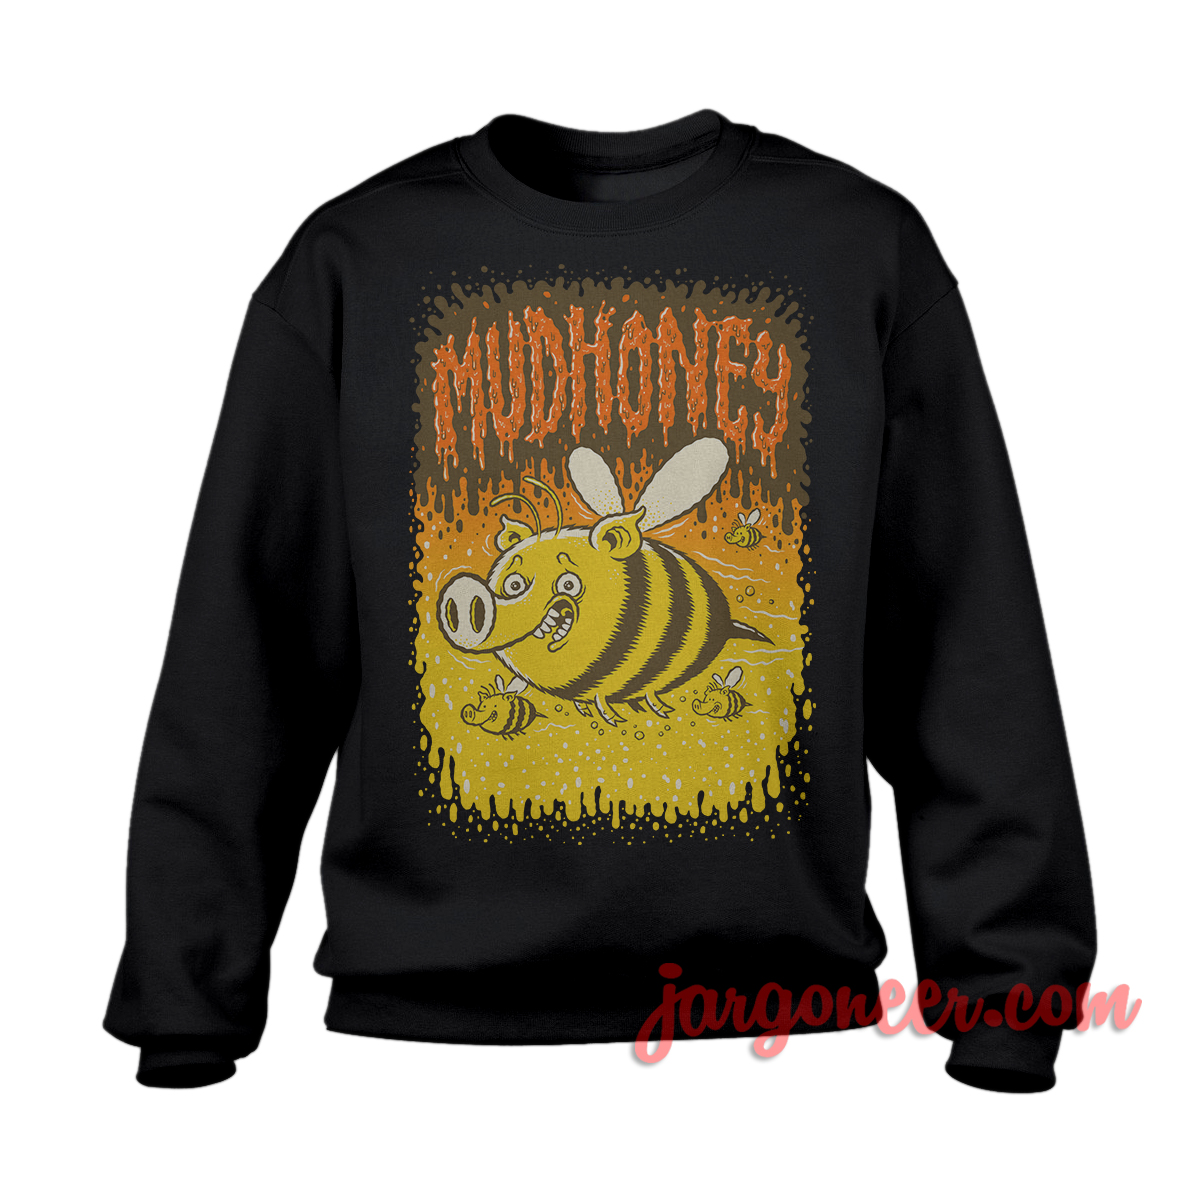 Mudhoney Bees Black SS - Shop Unique Graphic Cool Shirt Designs